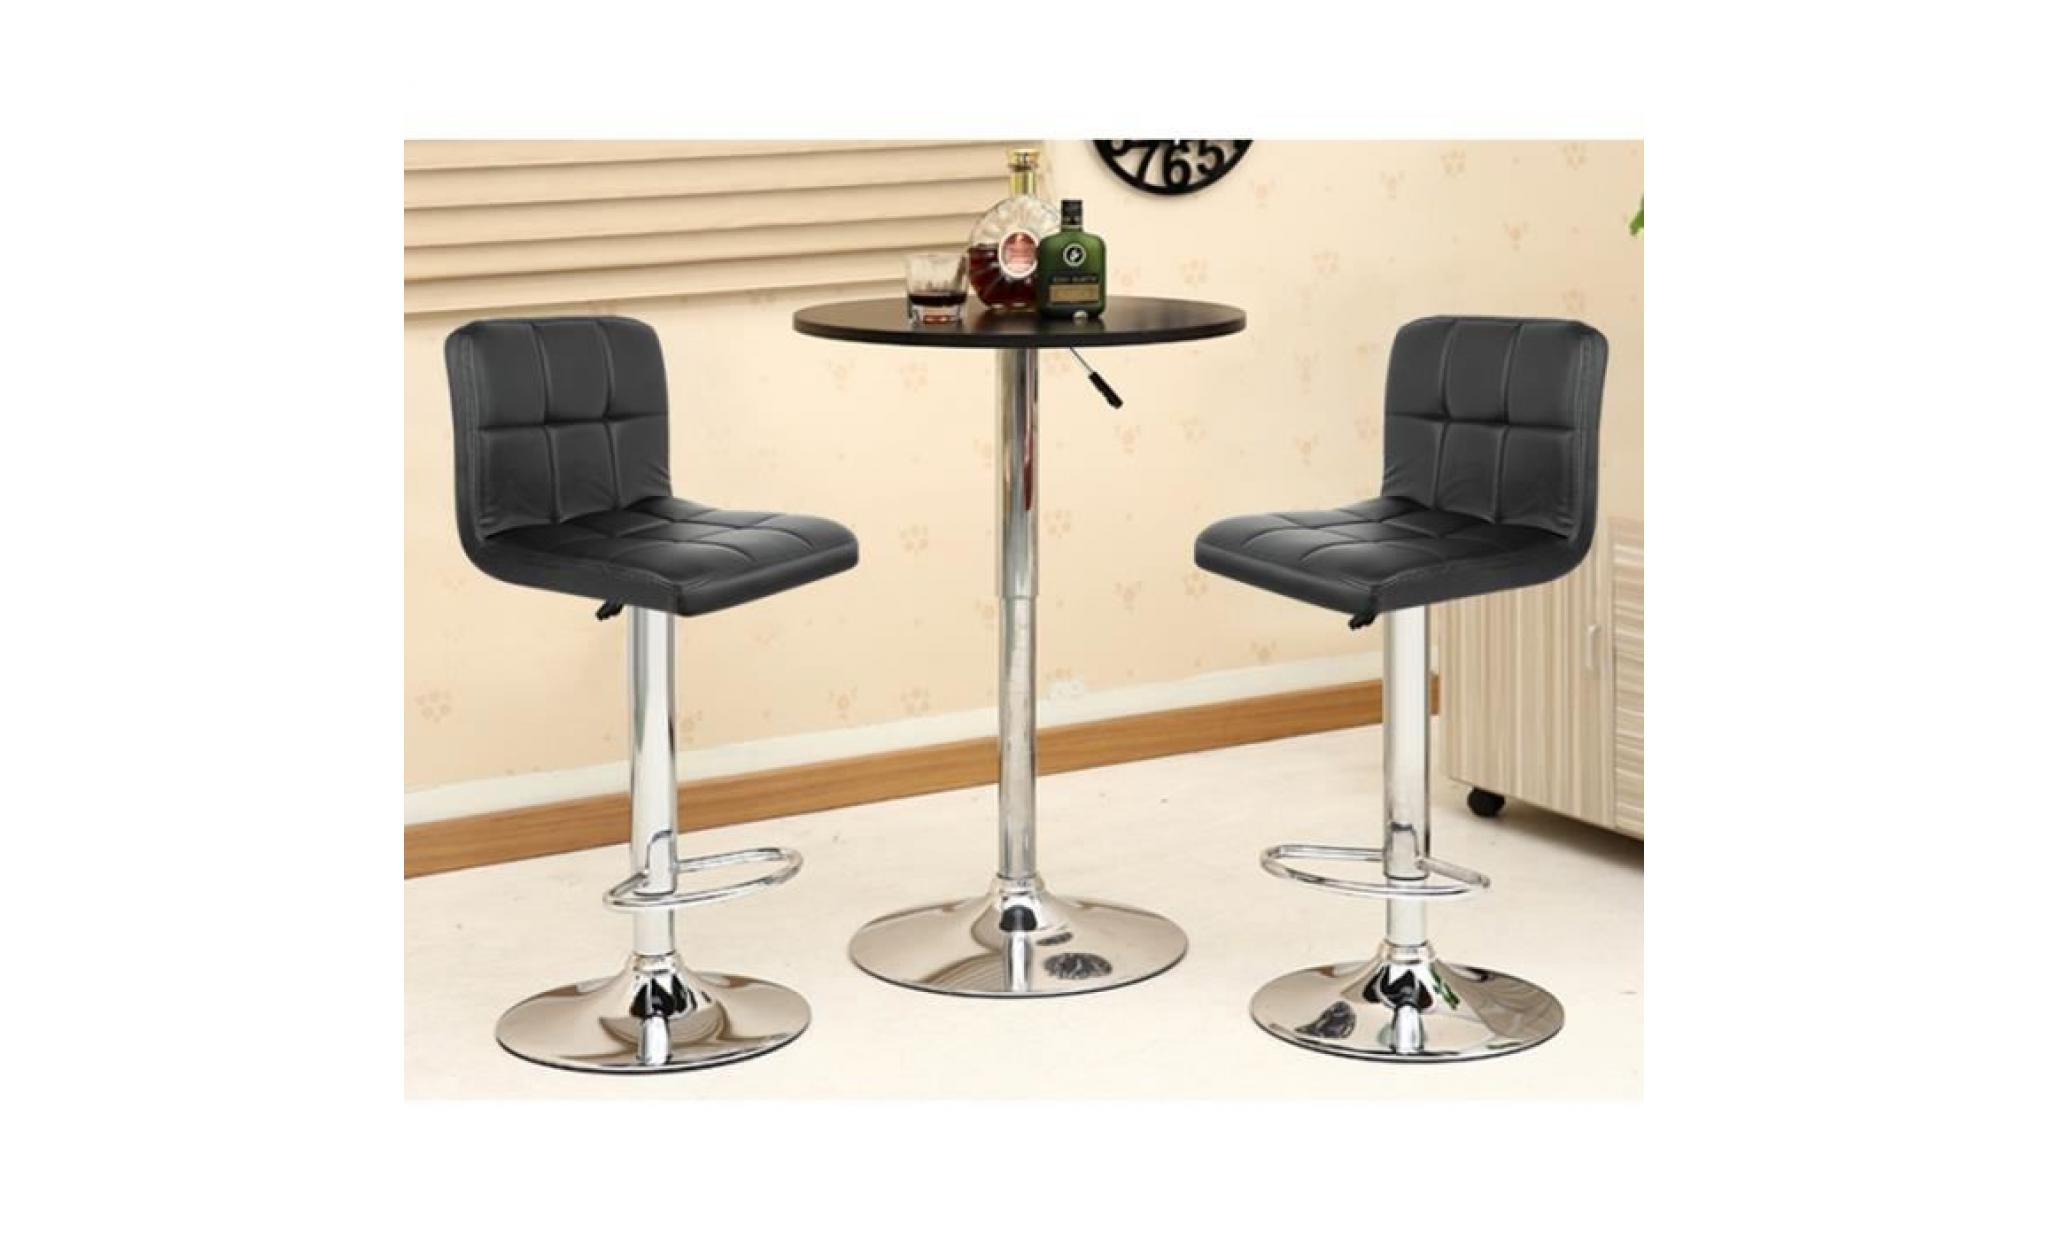 lot de 2 tabouret de bar, noir tabouret de bar design, chaise de bar pivotant et réglable en hauteur 62,5 cm   82,5 cm pas cher